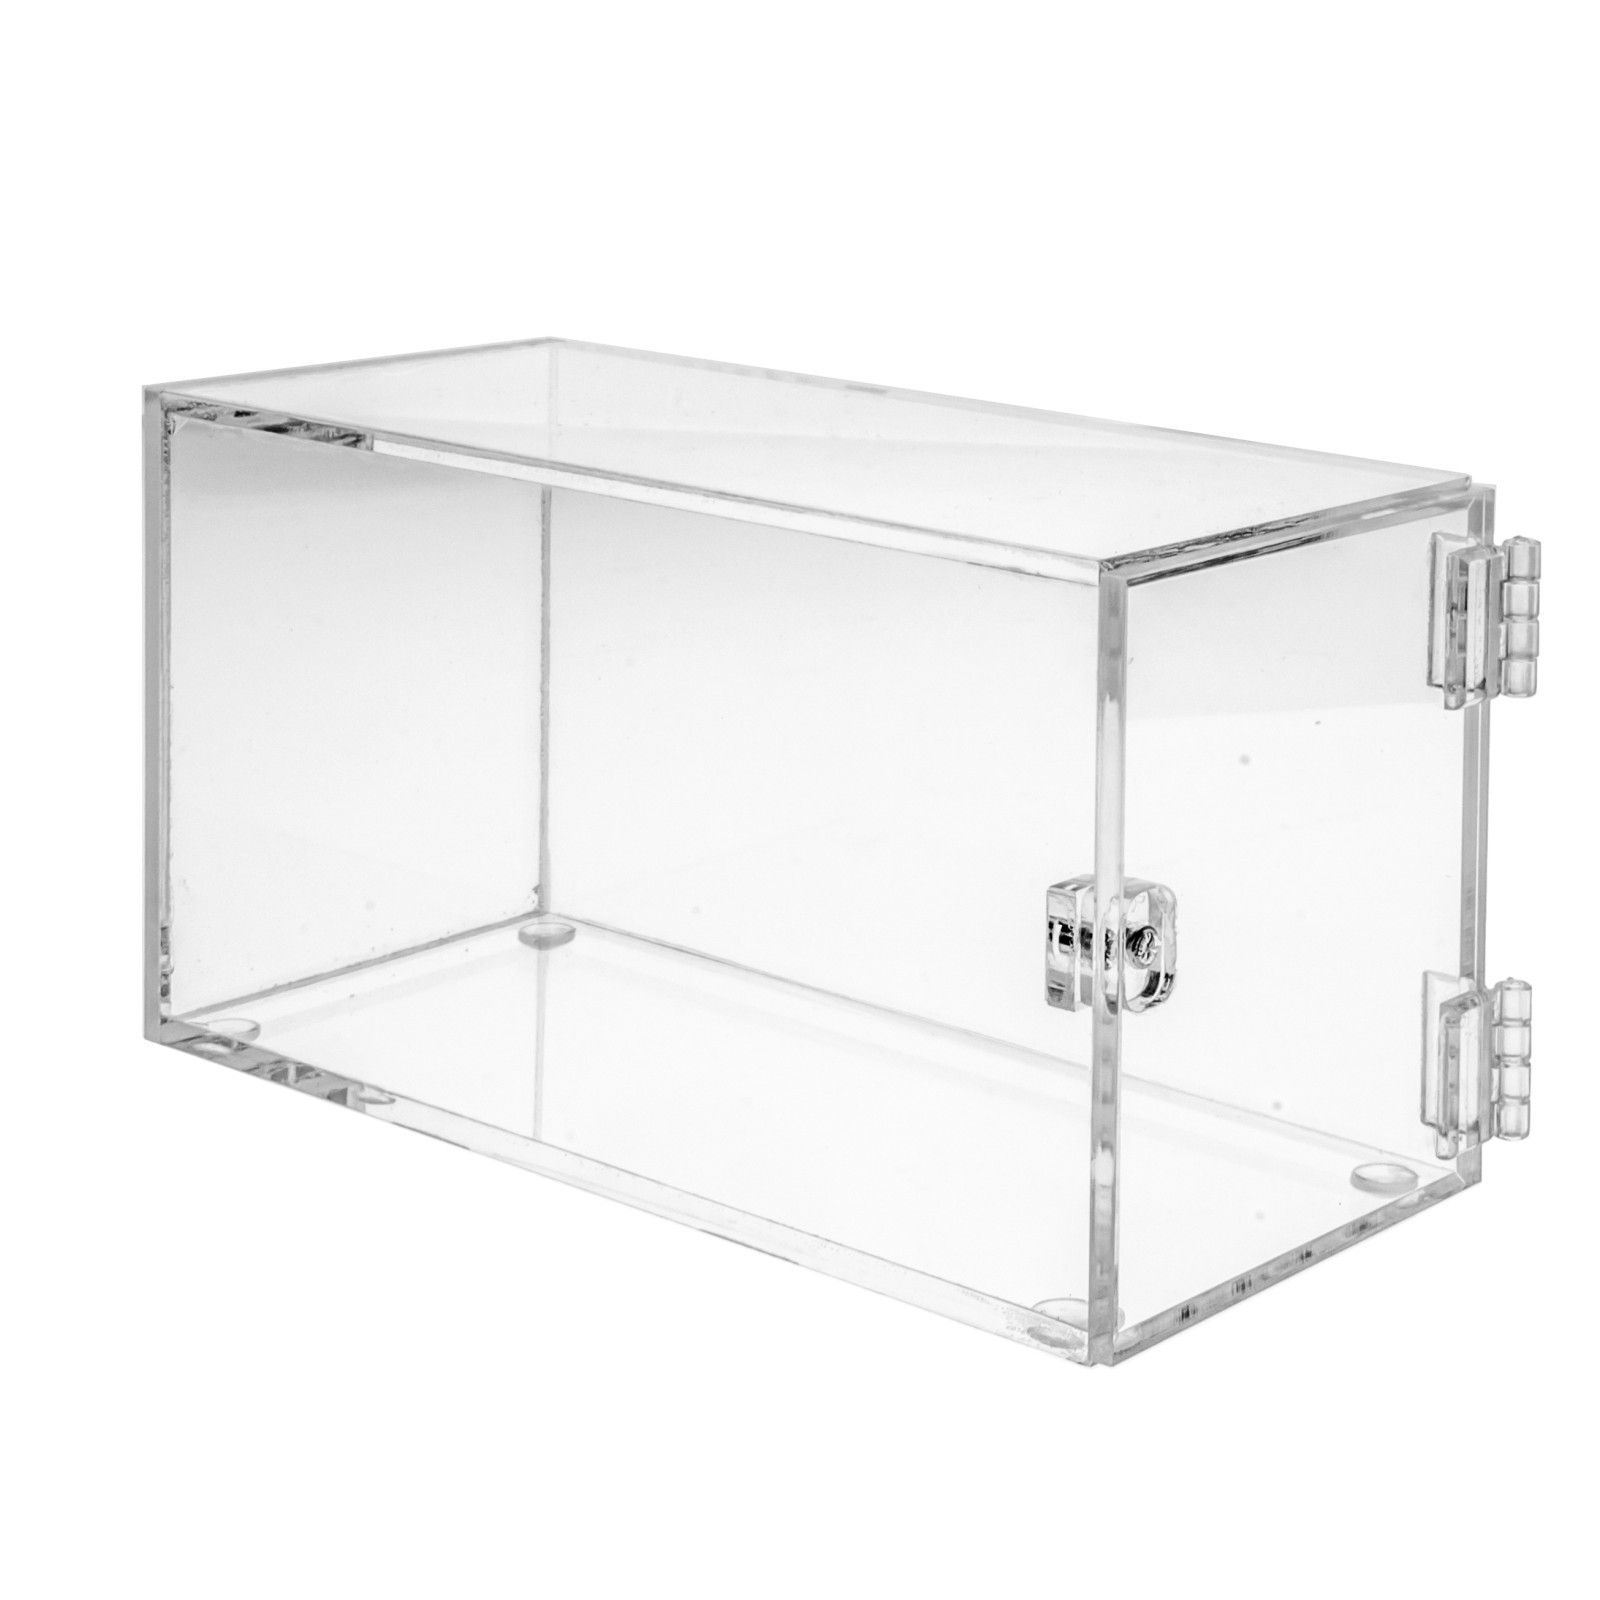 TECA 35x13x16 plexiglass for sale on